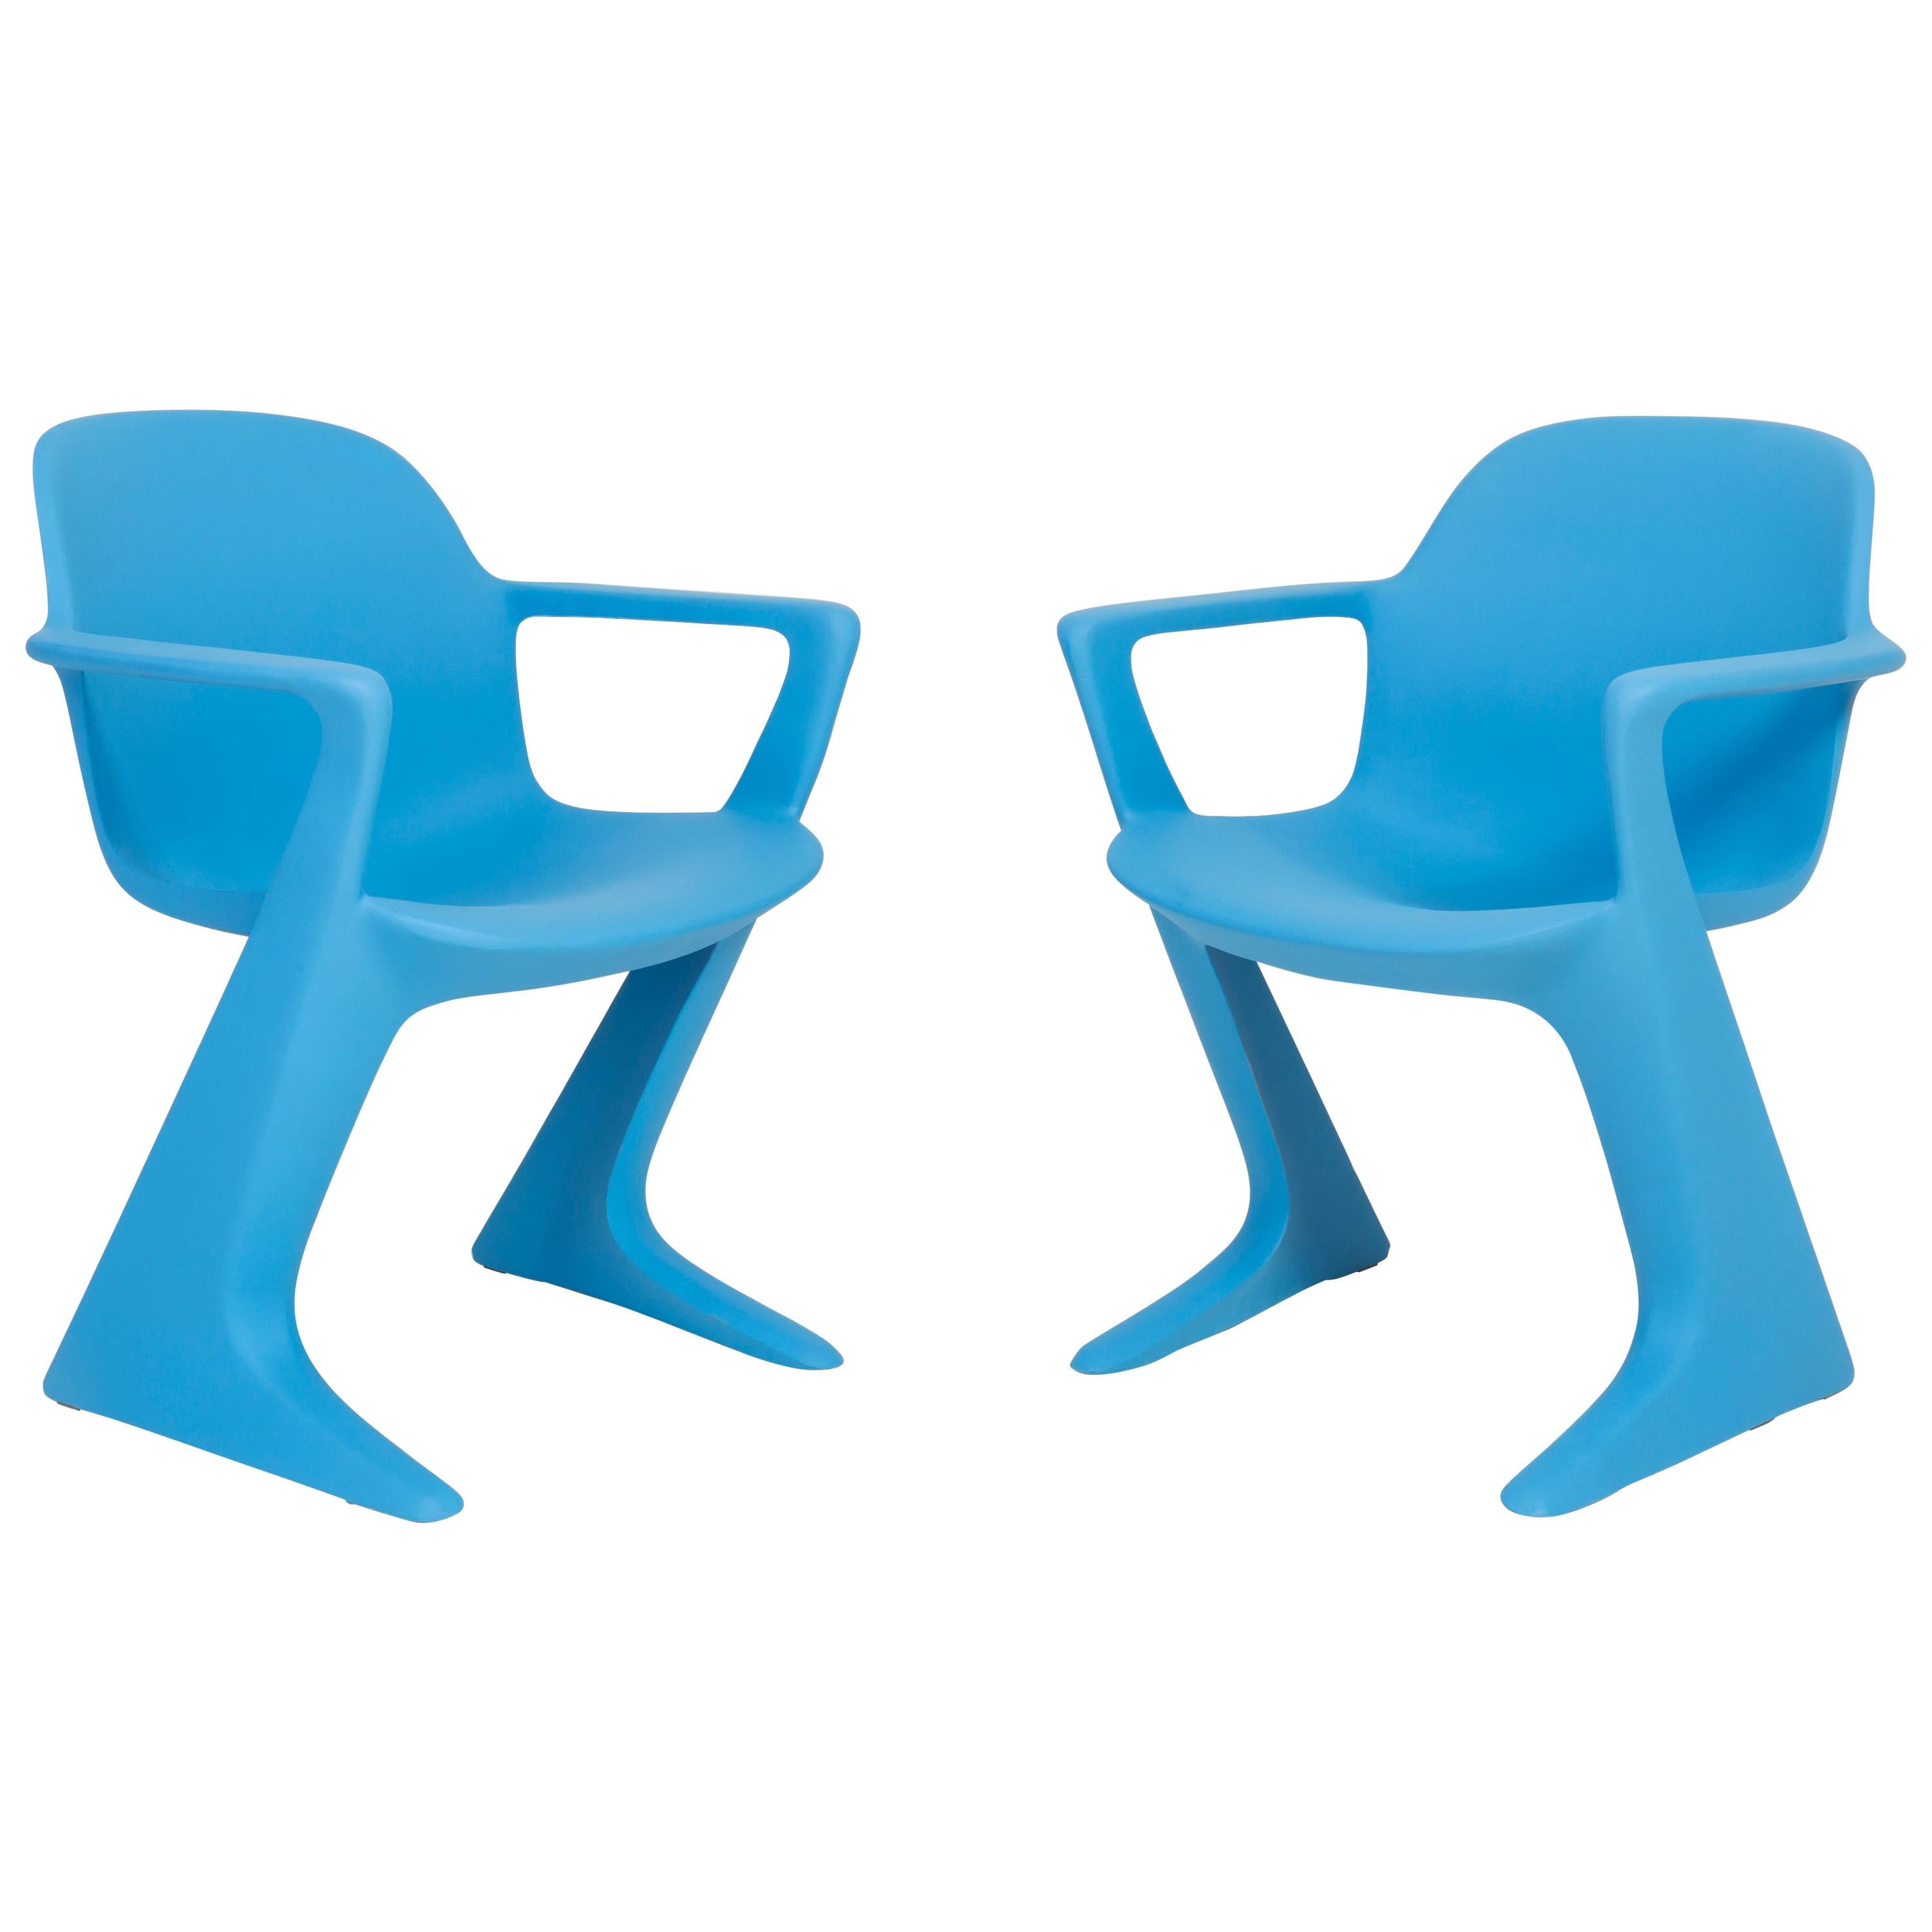 Ensemble de deux chaises Kangourou bleues conçues par Ernst Moeckl, Allemagne, 1968